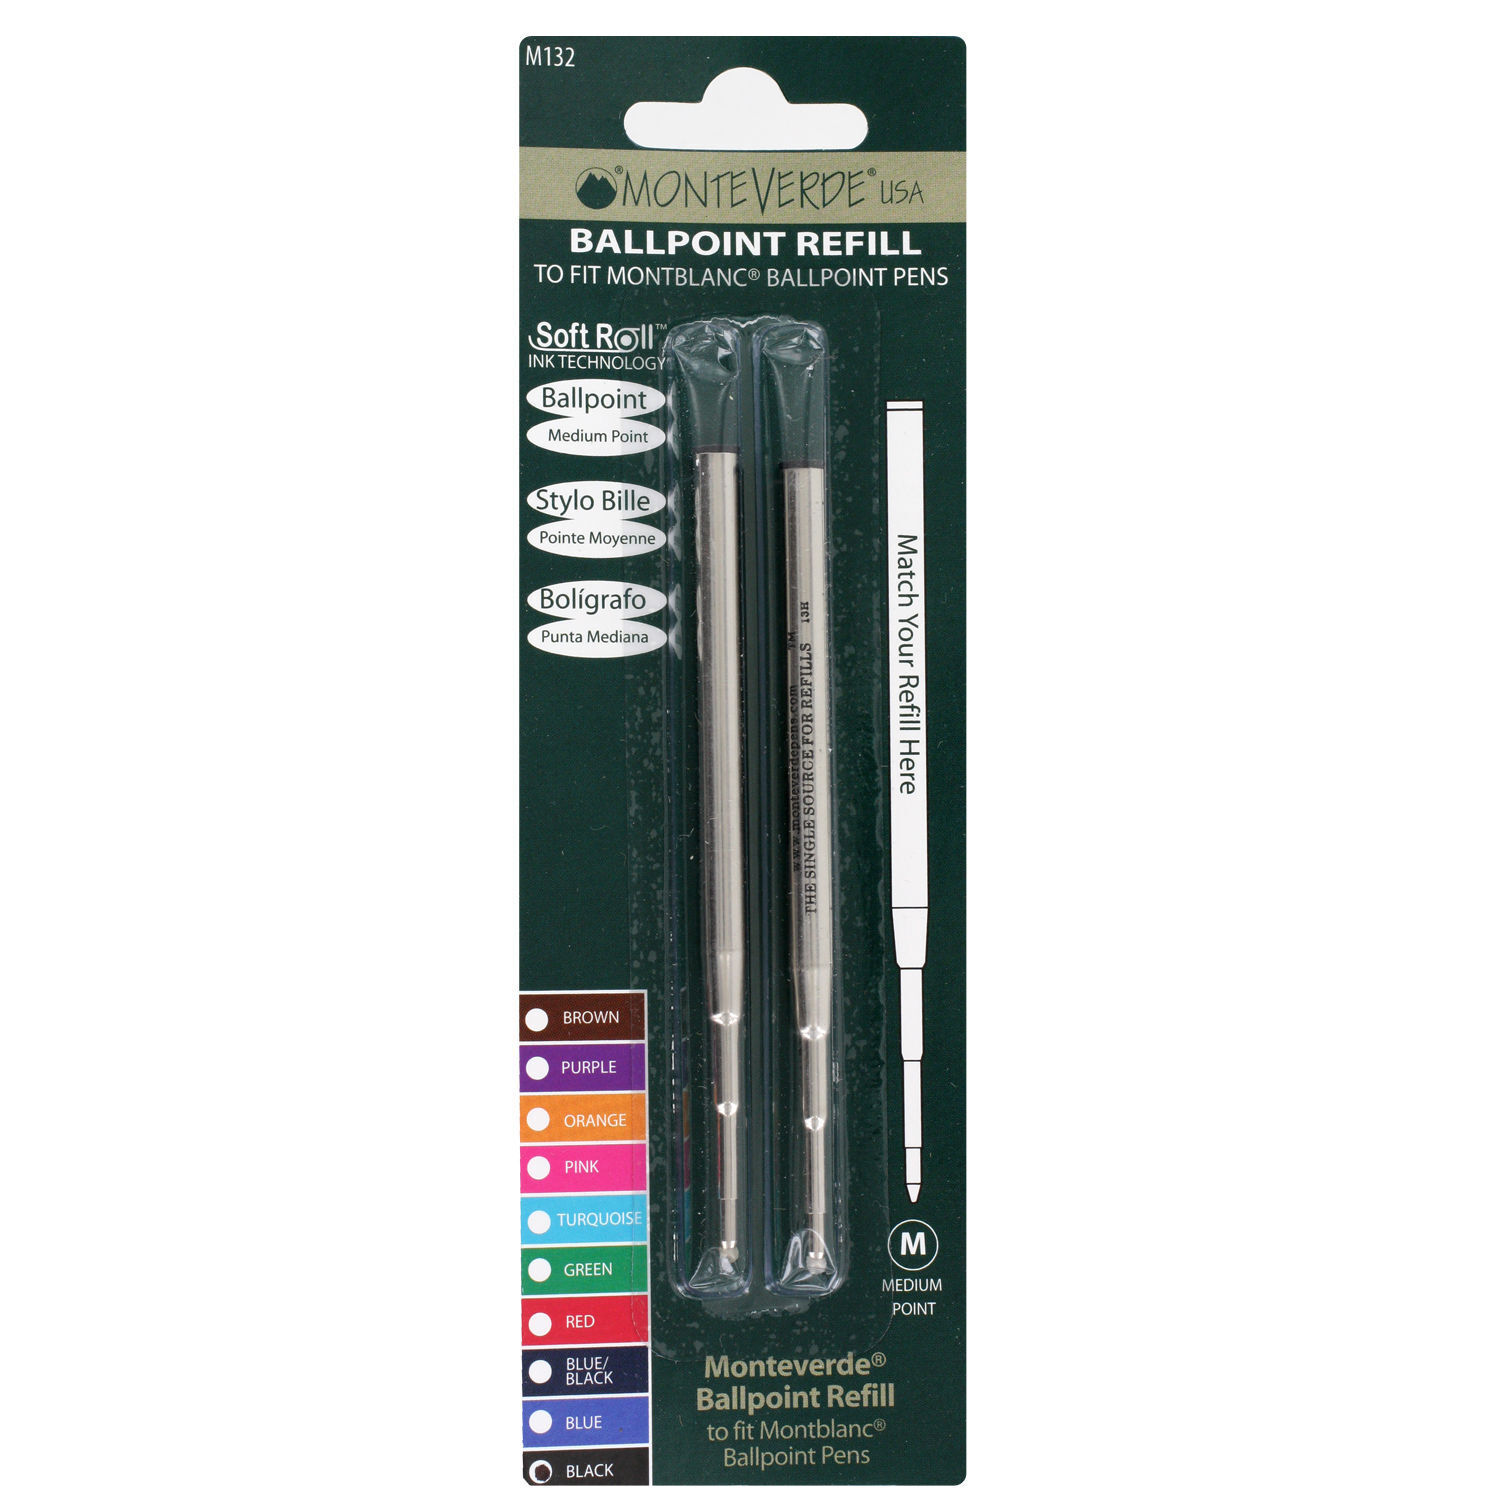 2 x Mont Blanc Compatible Ballpoint Pen Refills ink black m.p. Monteverde